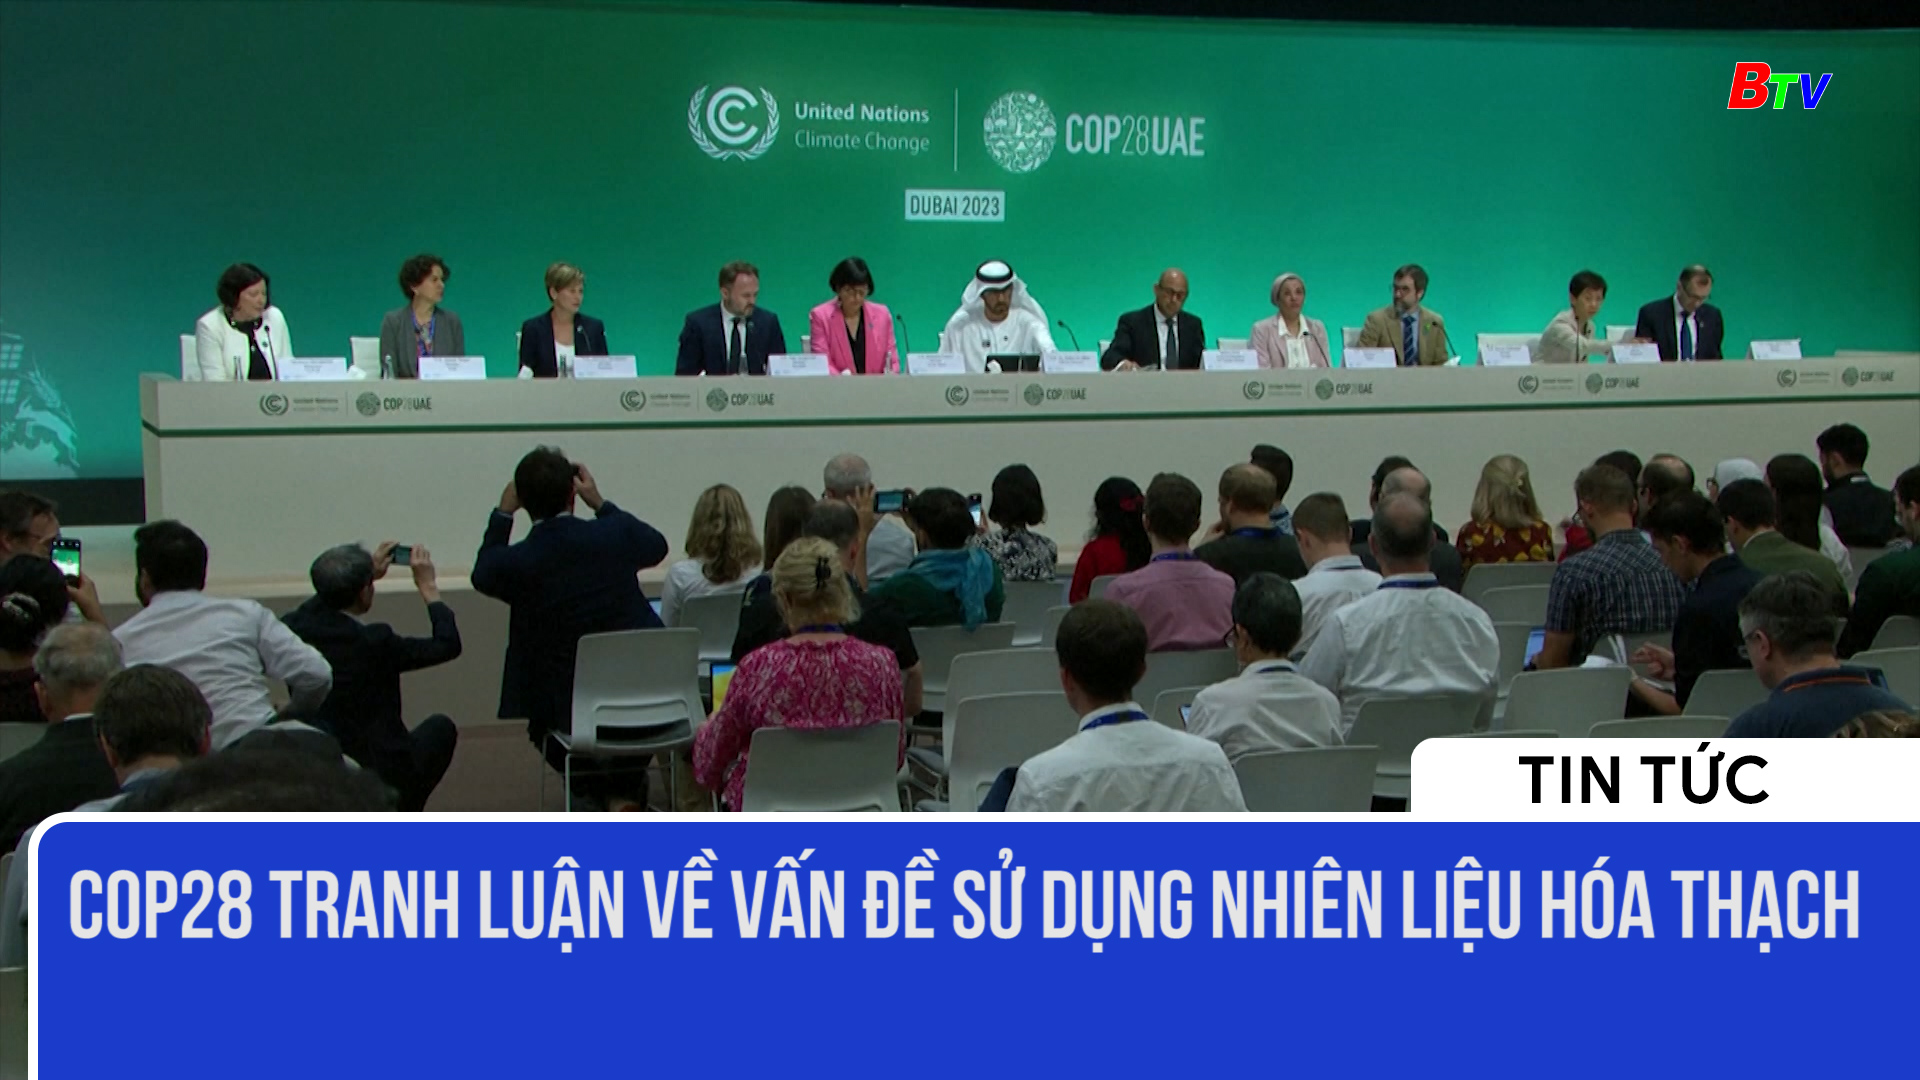 COP28 tranh luận về vấn đề sử dụng nhiên liệu hóa thạch